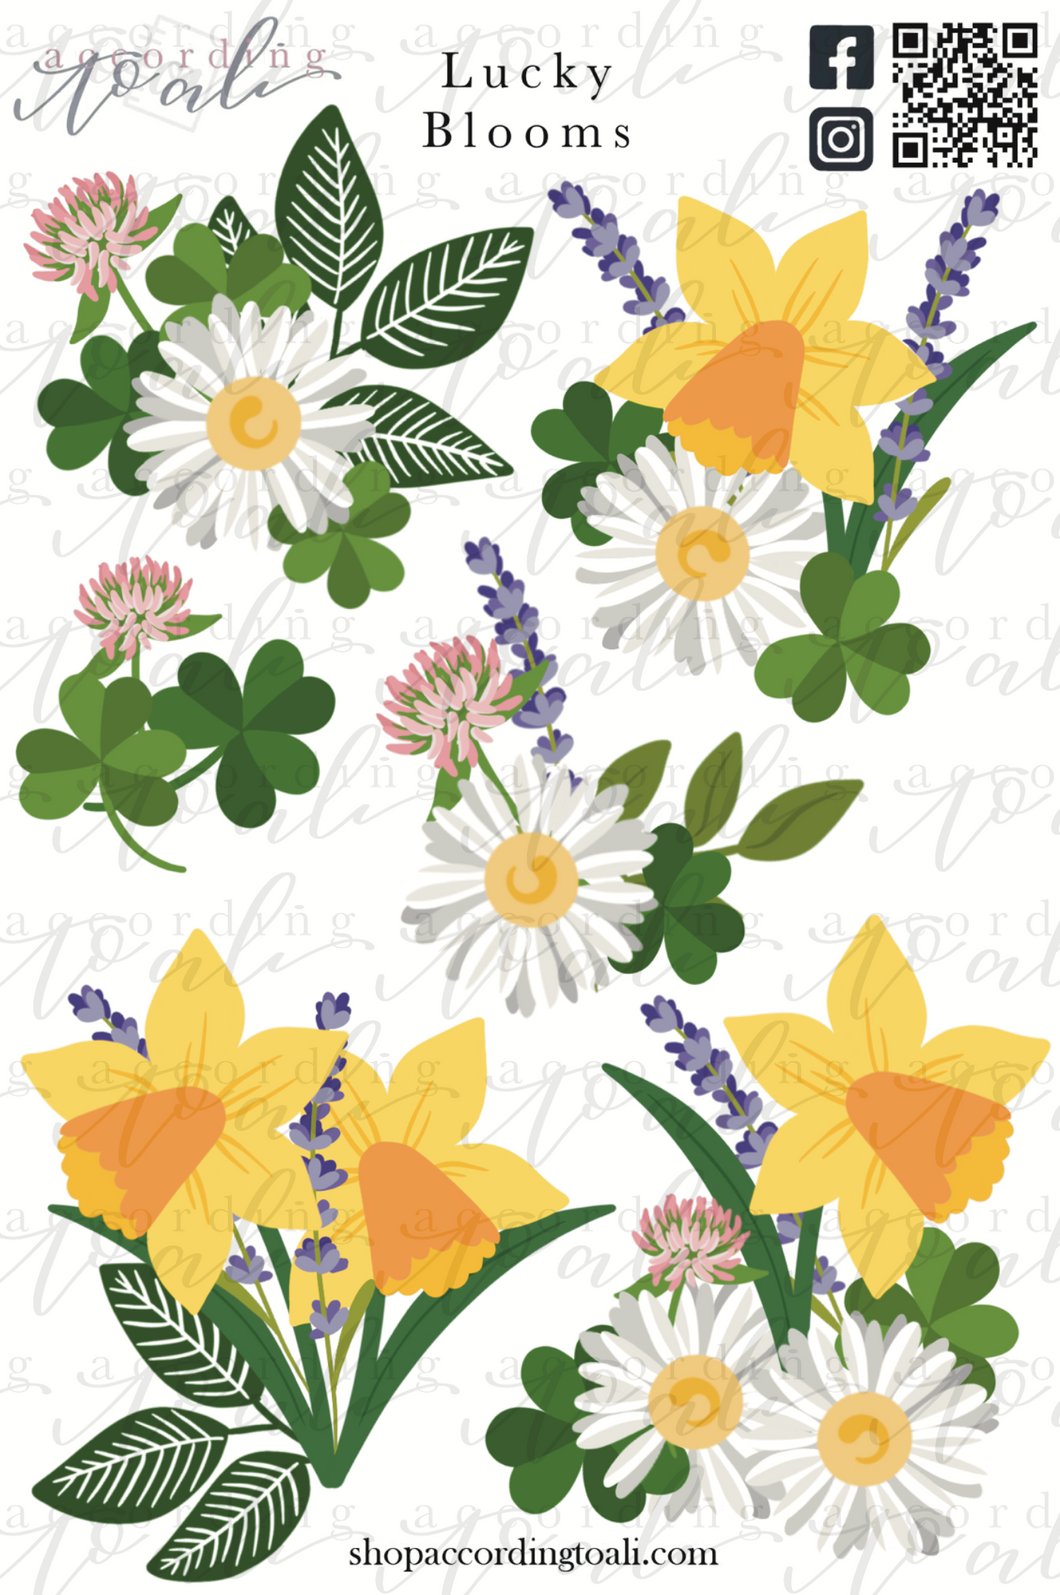 Lucky Blooms Sticker Sheet